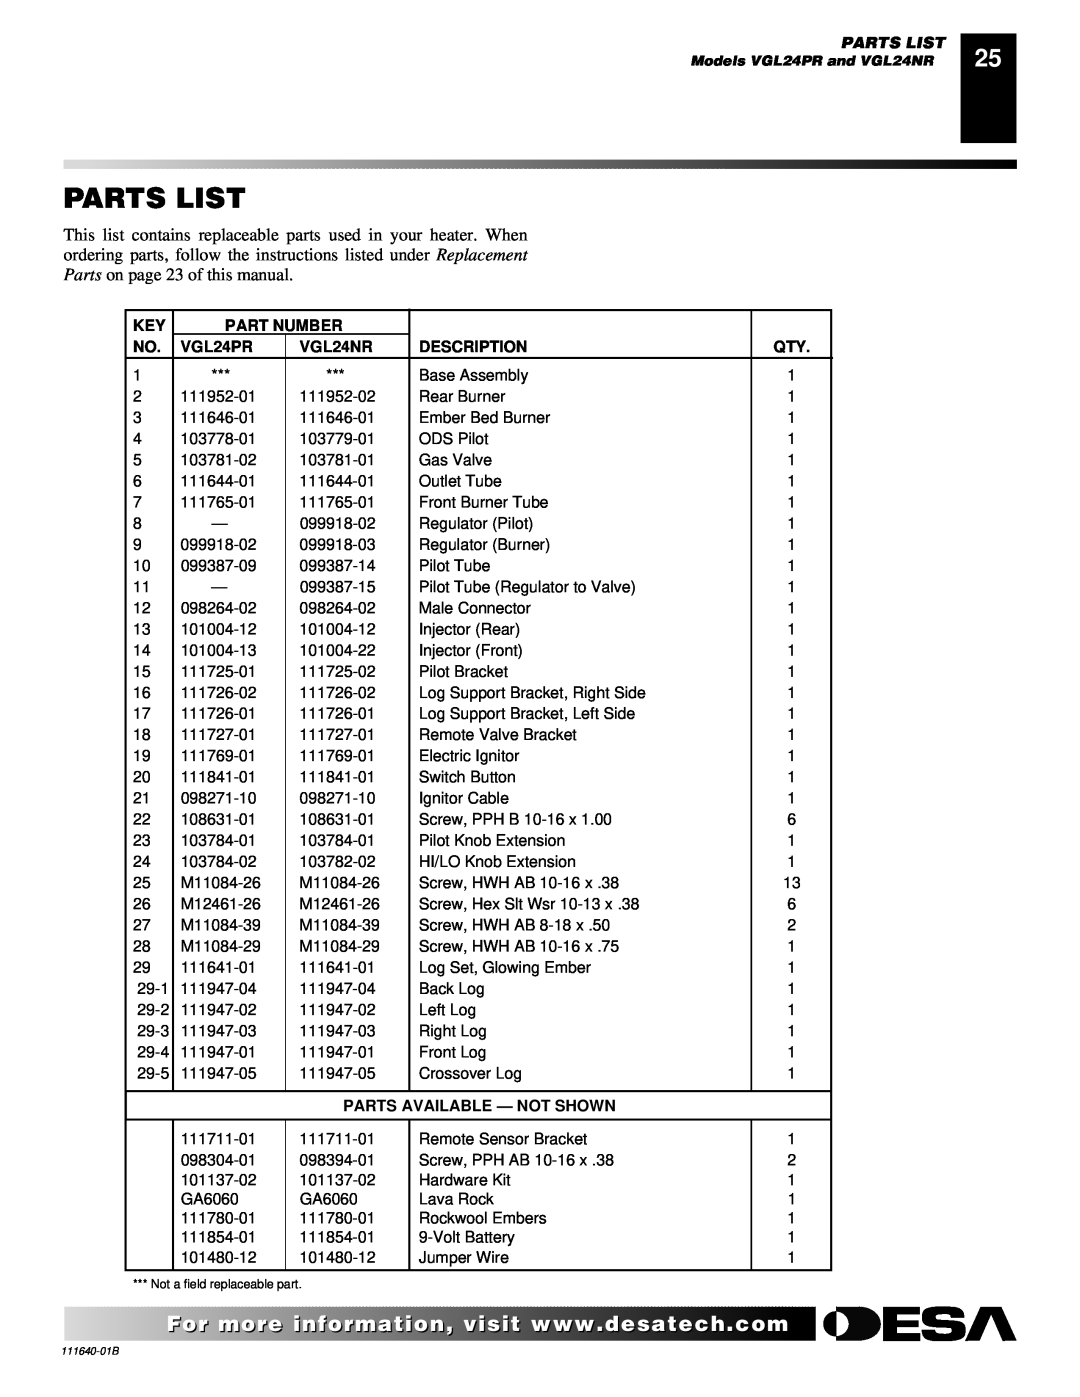 Desa VGL24NR installation manual Parts List, Part Number, VGL24PR, Description, Parts Available - Not Shown 